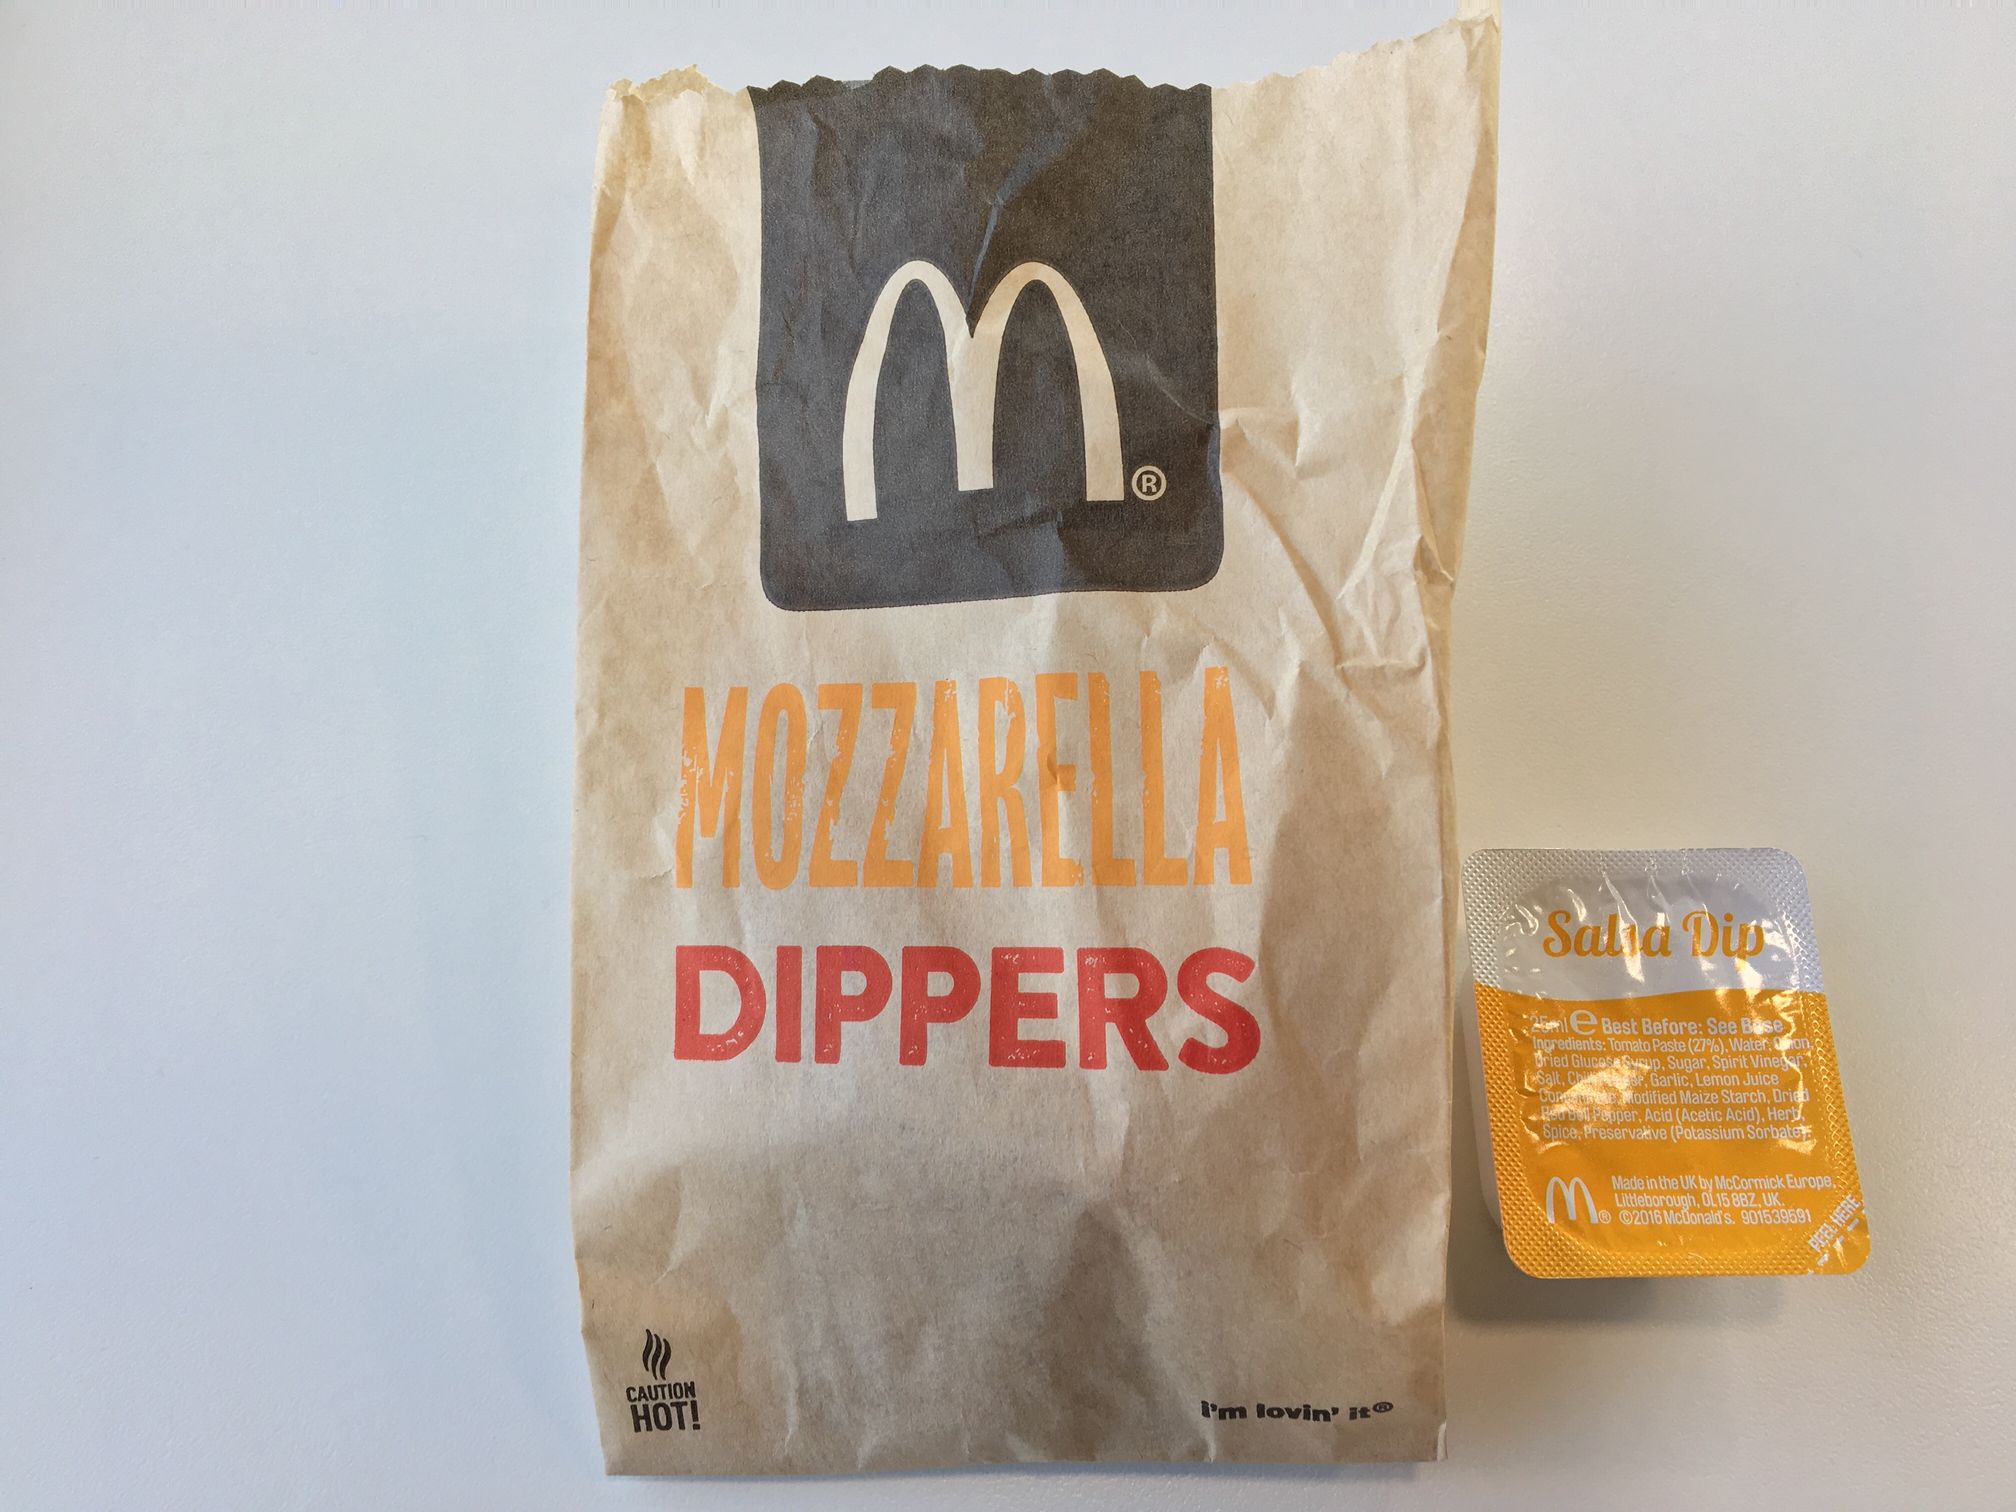 Mozzarella Dippers